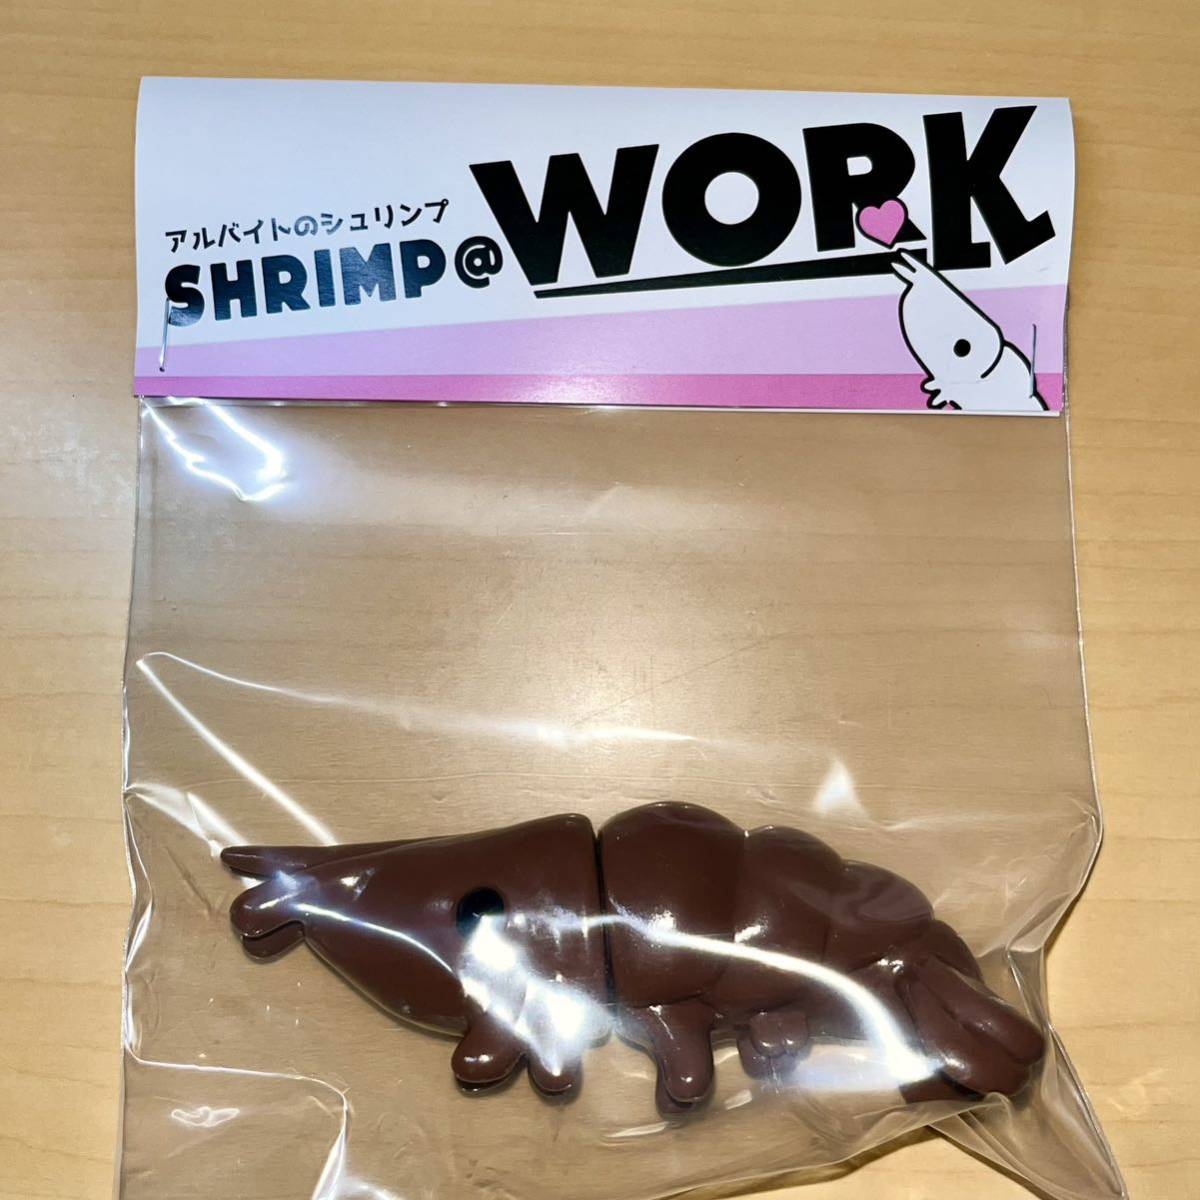 アルバイトのシュリンプ SHRIMP @ WORK チョコレート ブラウン TINY SHOP SCIENCE PATROL サイエンスパトロール バイト えびsofvi ソフビの画像2